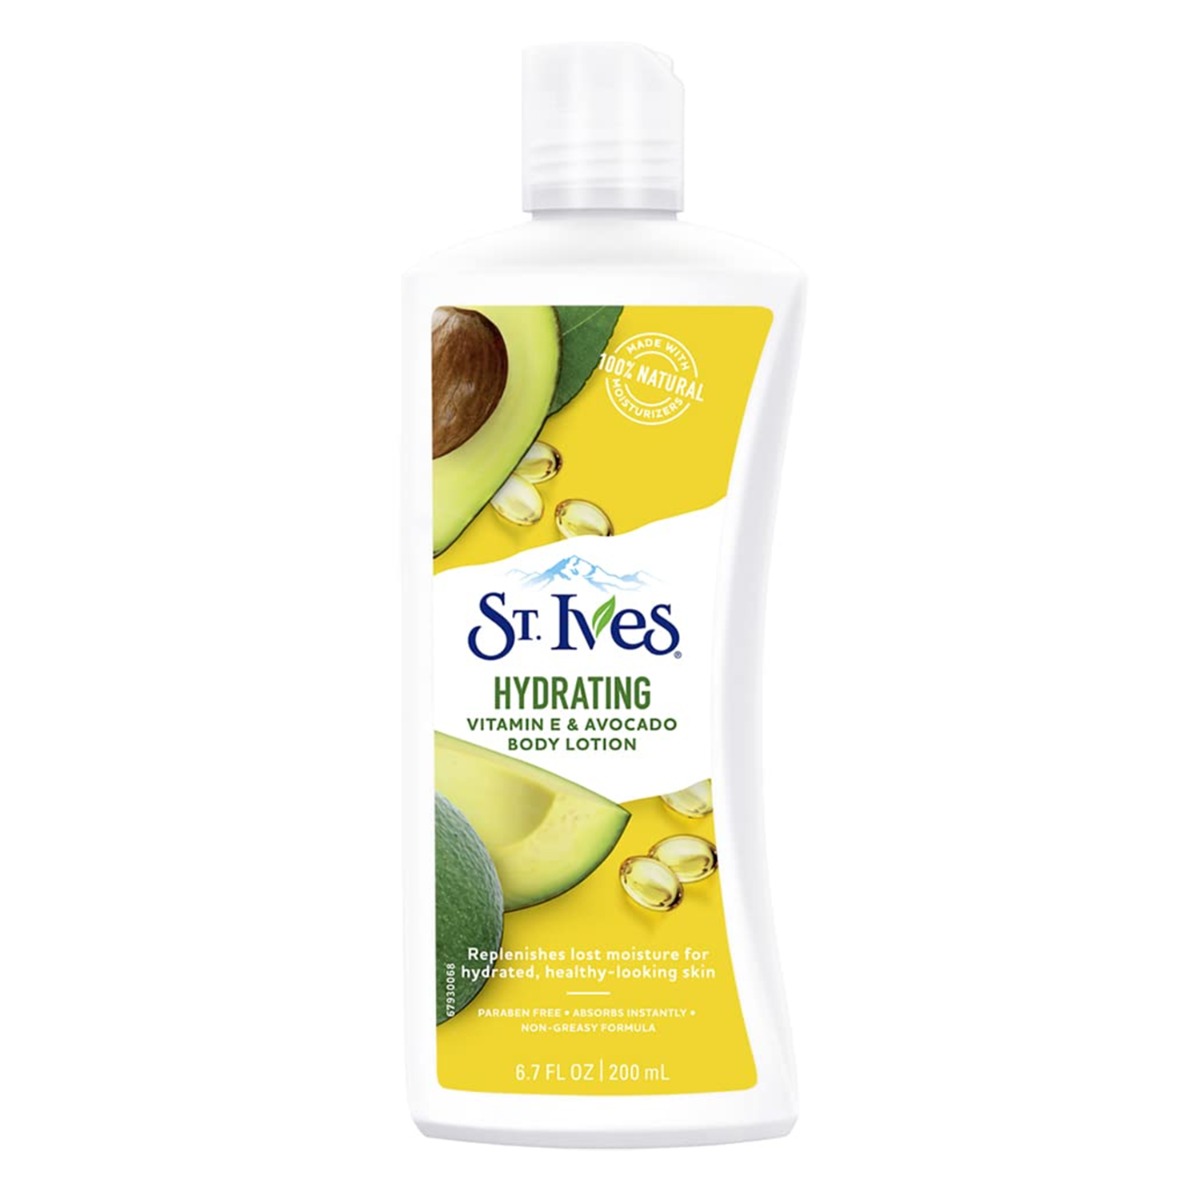 St.Ives Hydrating Vitamin E & Avocado Lotion Body Lotion, 200ml